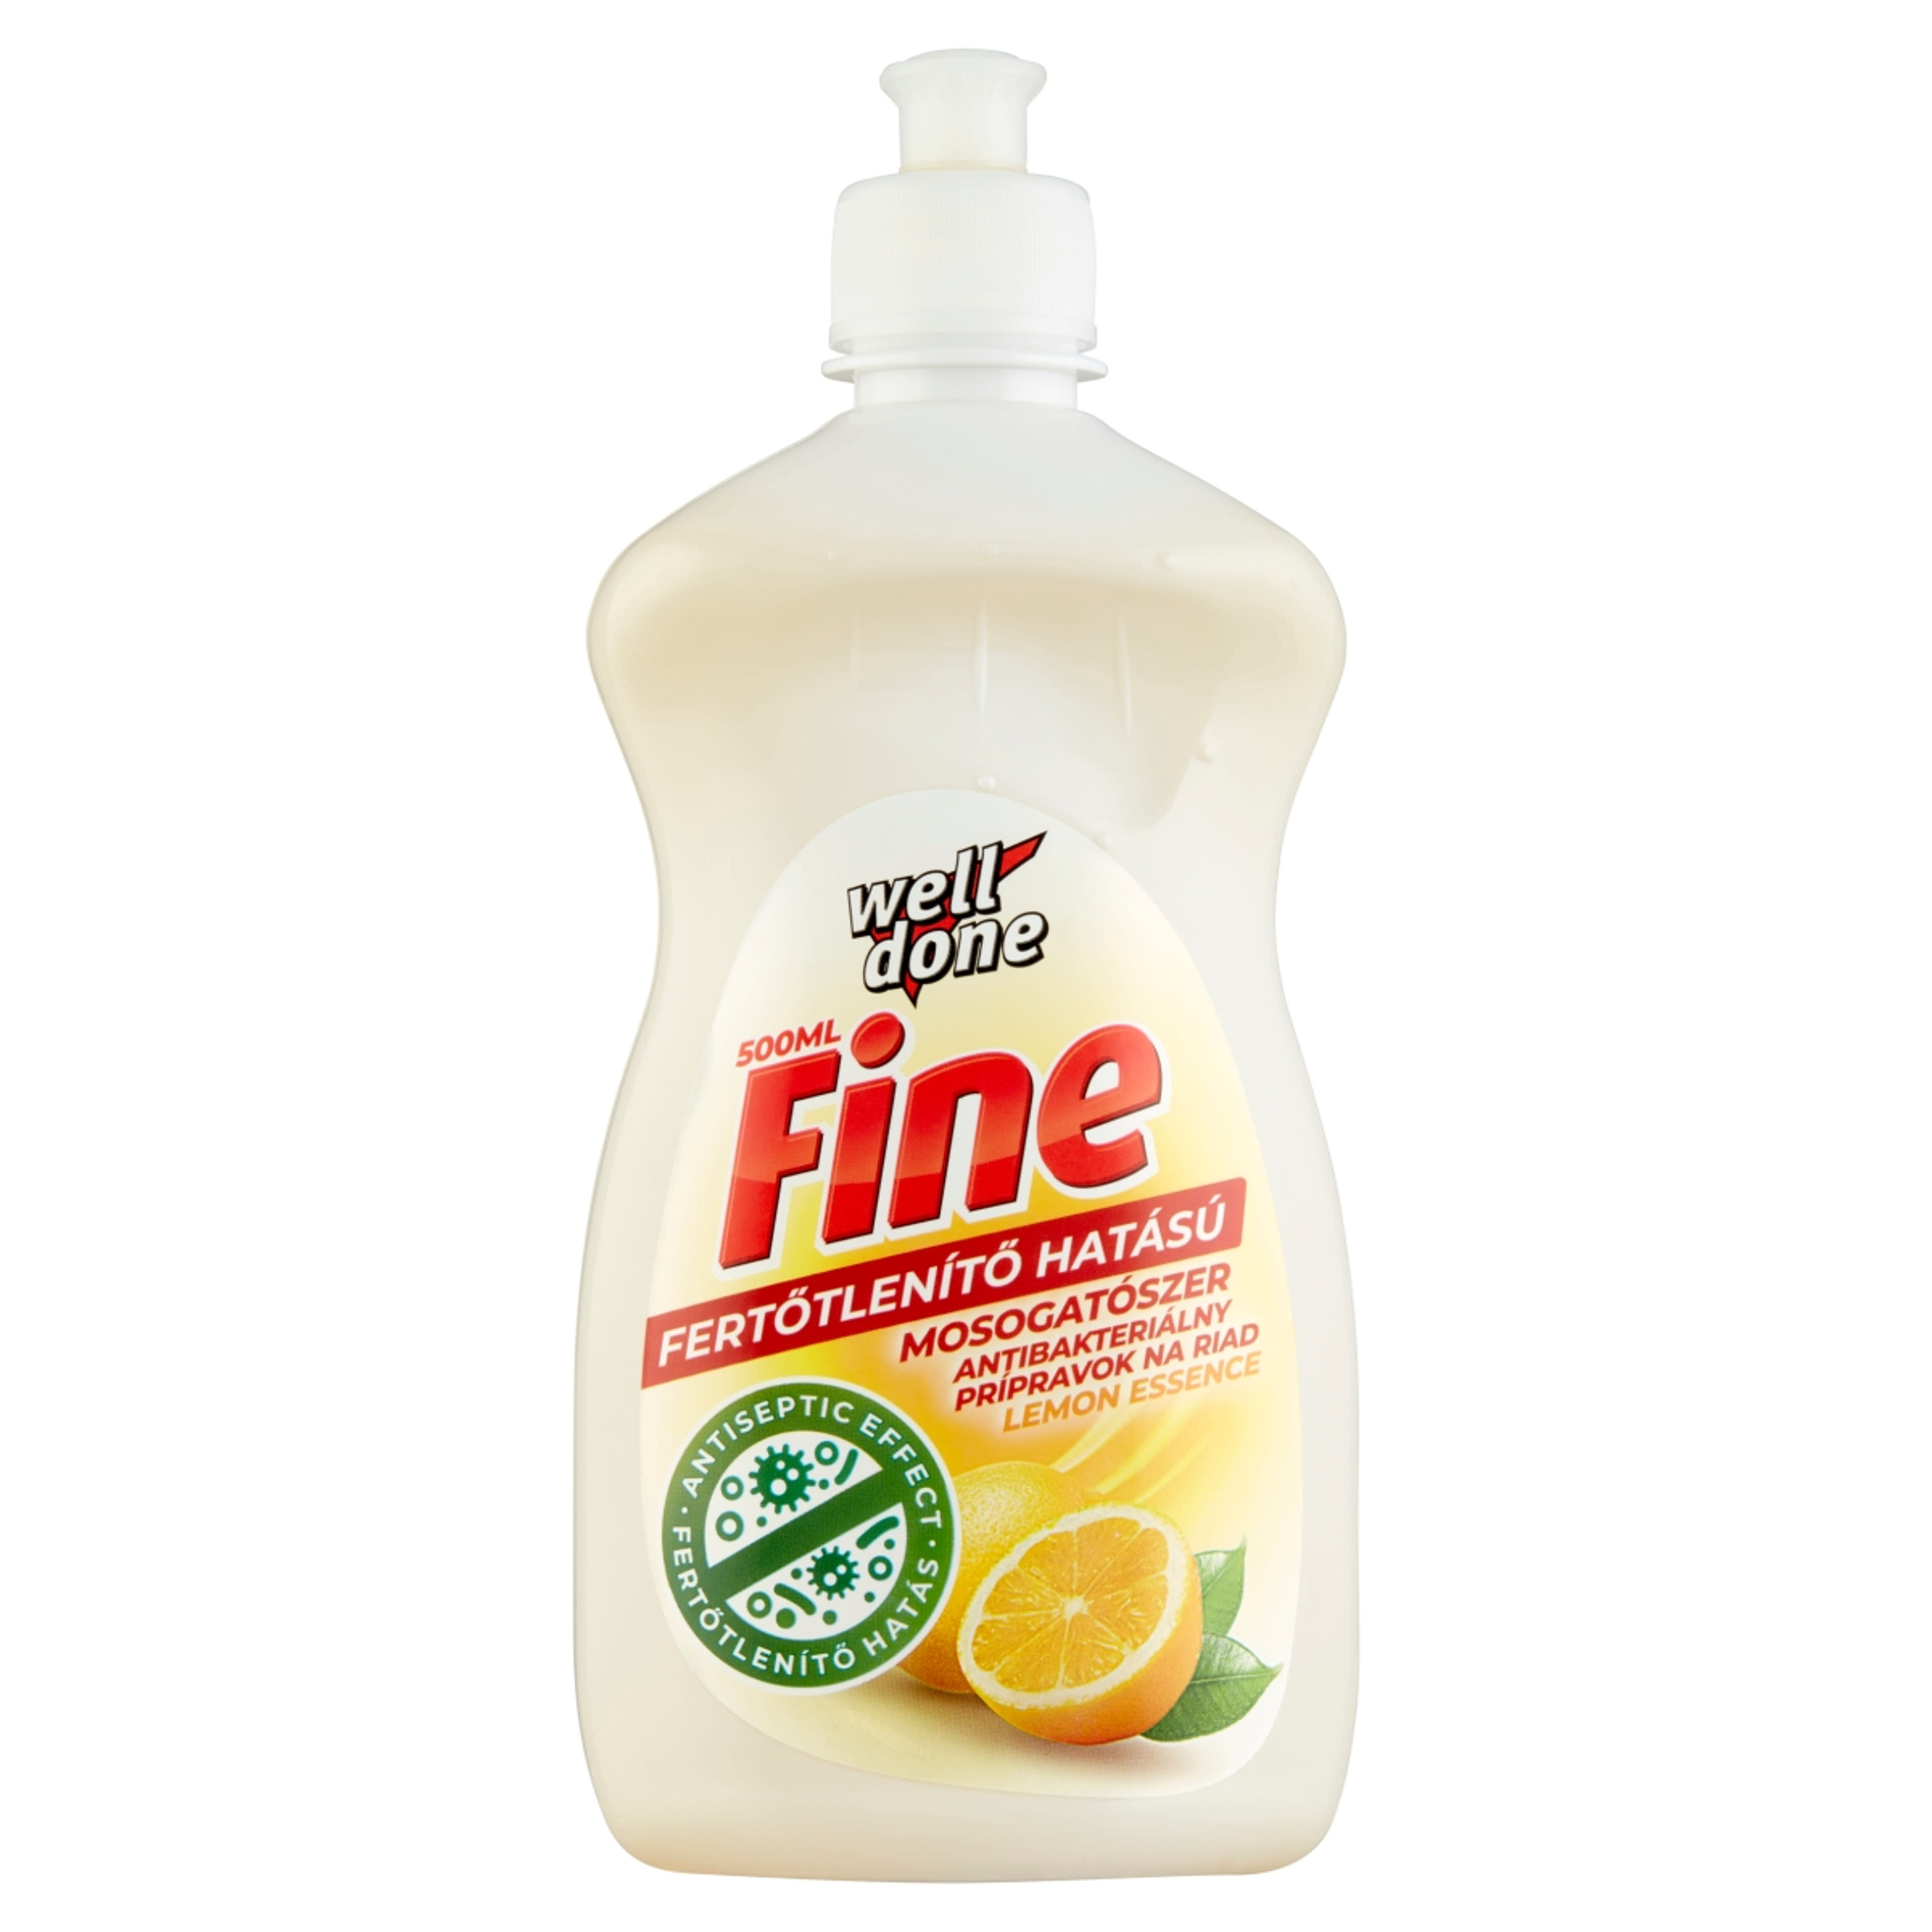 Well Done fine fertőtlenítő mosogatószer lemon essence - 500 ml-1